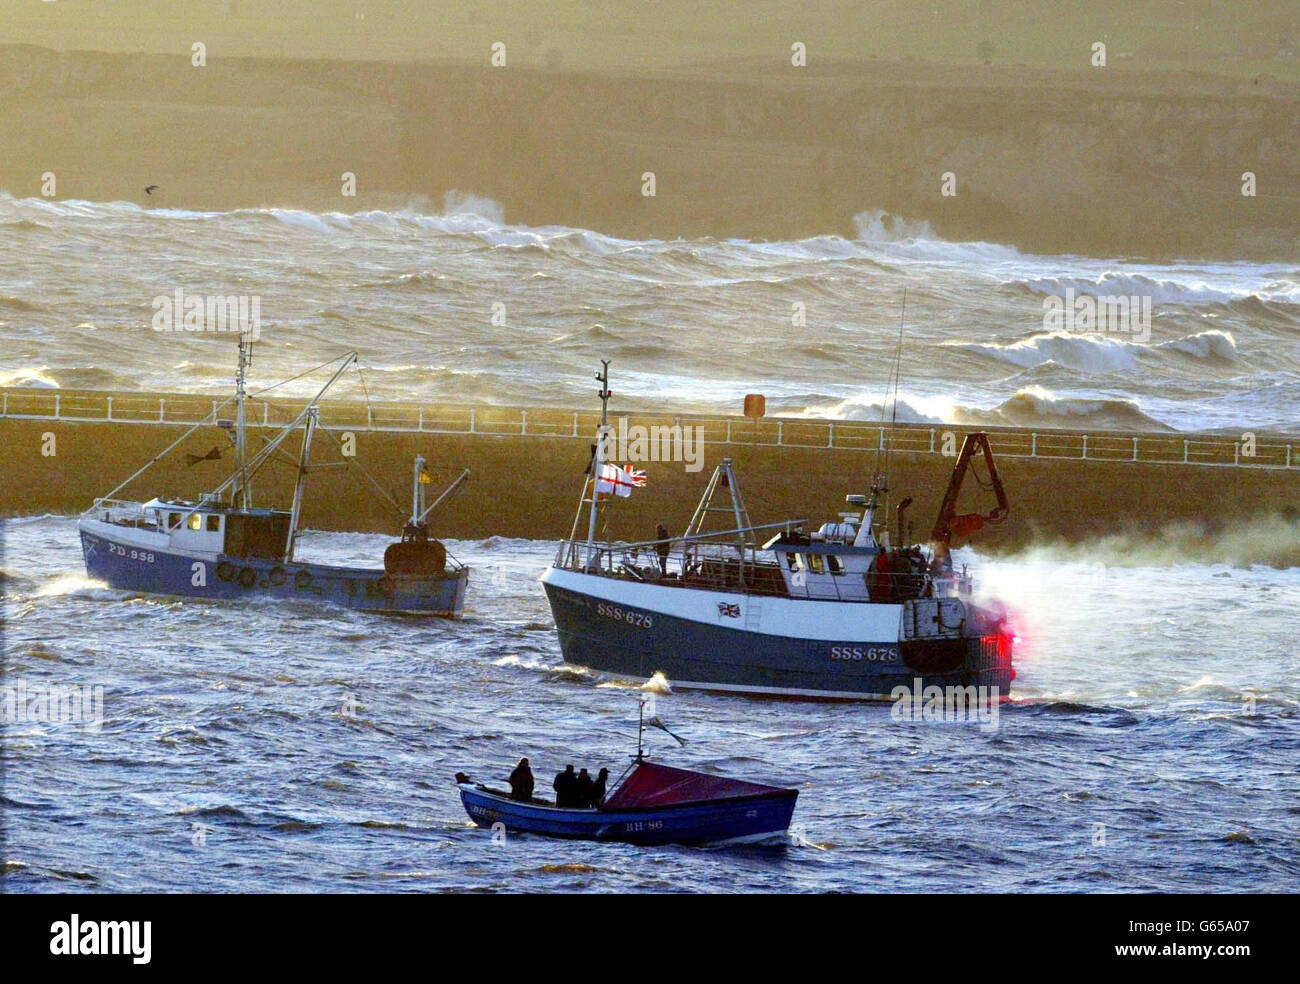 Fischerboote an der Mündung des Flusses Tyne, wo eine Flottille von etwa 30 Booten vor dem Segeln stromaufwärts versammelt, Klang ihre Hörner in einer lauten Demonstration. * die protestierenden britischen Fischer feuerten Hunderte von Fackeln in die Luft, um die Zahl der Arbeitsplätze an der Ostküste zu markieren, von denen sie sagen, dass sie gefährdet sind, wenn neue europäische Quoten eingeführt werden. Aber Fischer betonten, dass es keine Absicht gebe, den Fluss zu blockieren, anders als ein Protest im französischen Hafen von Boulogne, der befürchtet wird, die Cross-Channel-Weihnachts-"Alkohol-Kreuzfahrt"-Käufer stören könnte. Weitere Schiffe aus den Nordseehäfen sollten der Tyneside beitreten Stockfoto